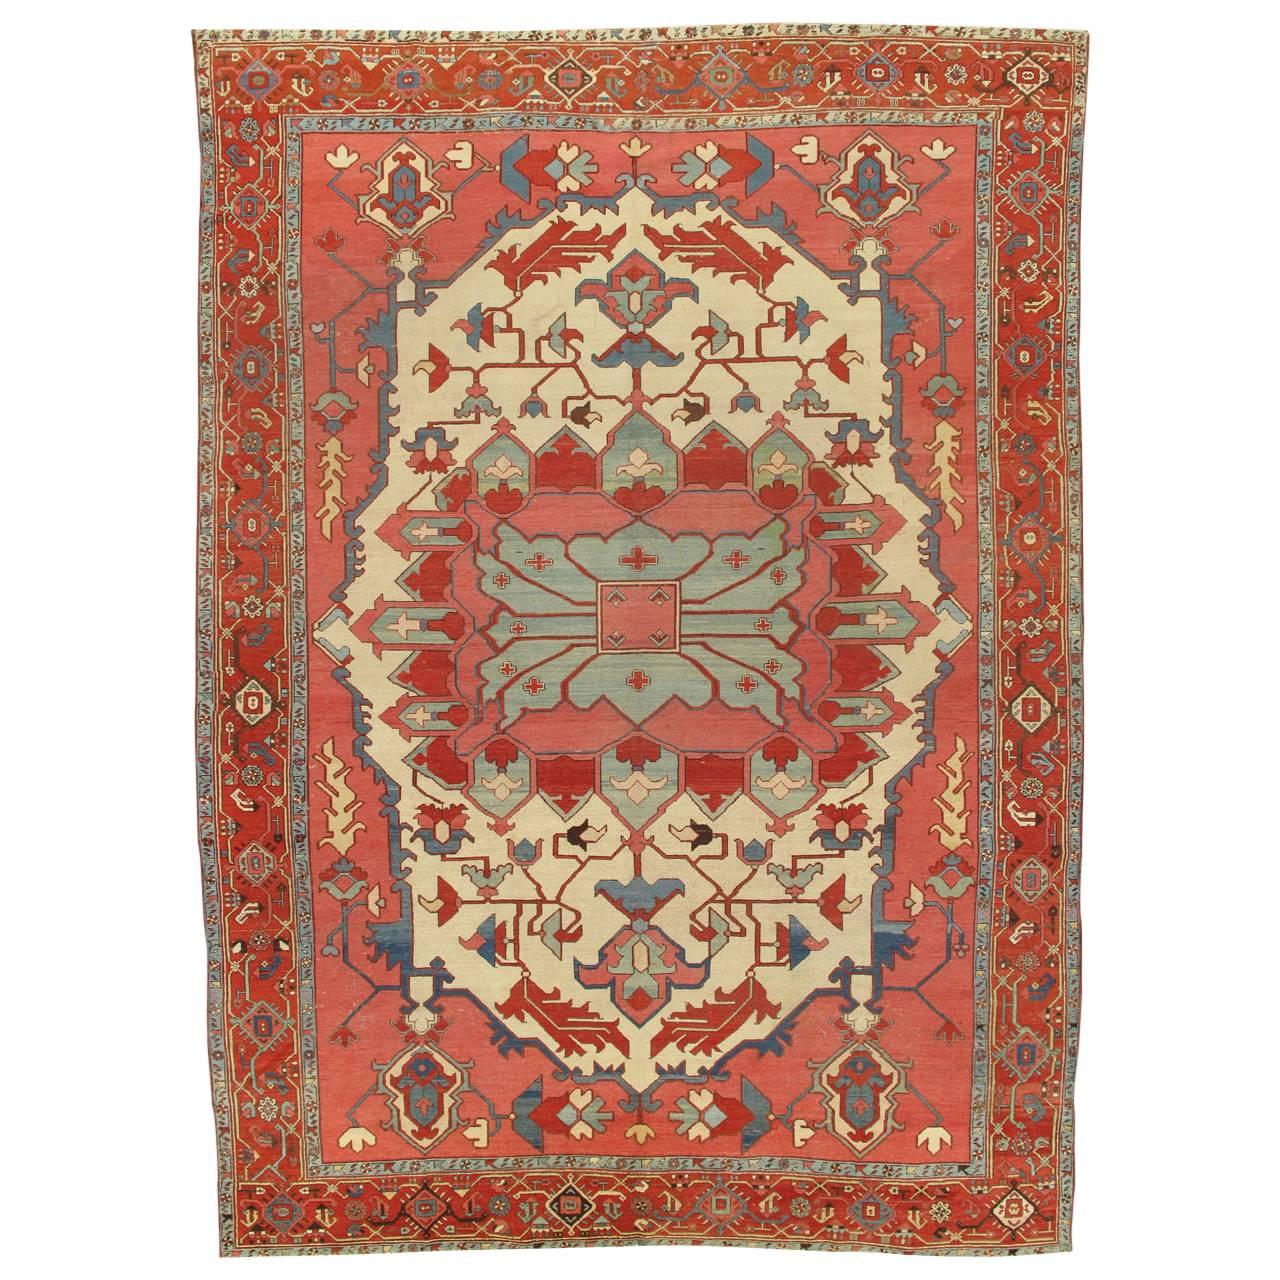 Antique Persian Serapi Carpet, Handmade Rug Ivory, Light Blue, Rusty Red